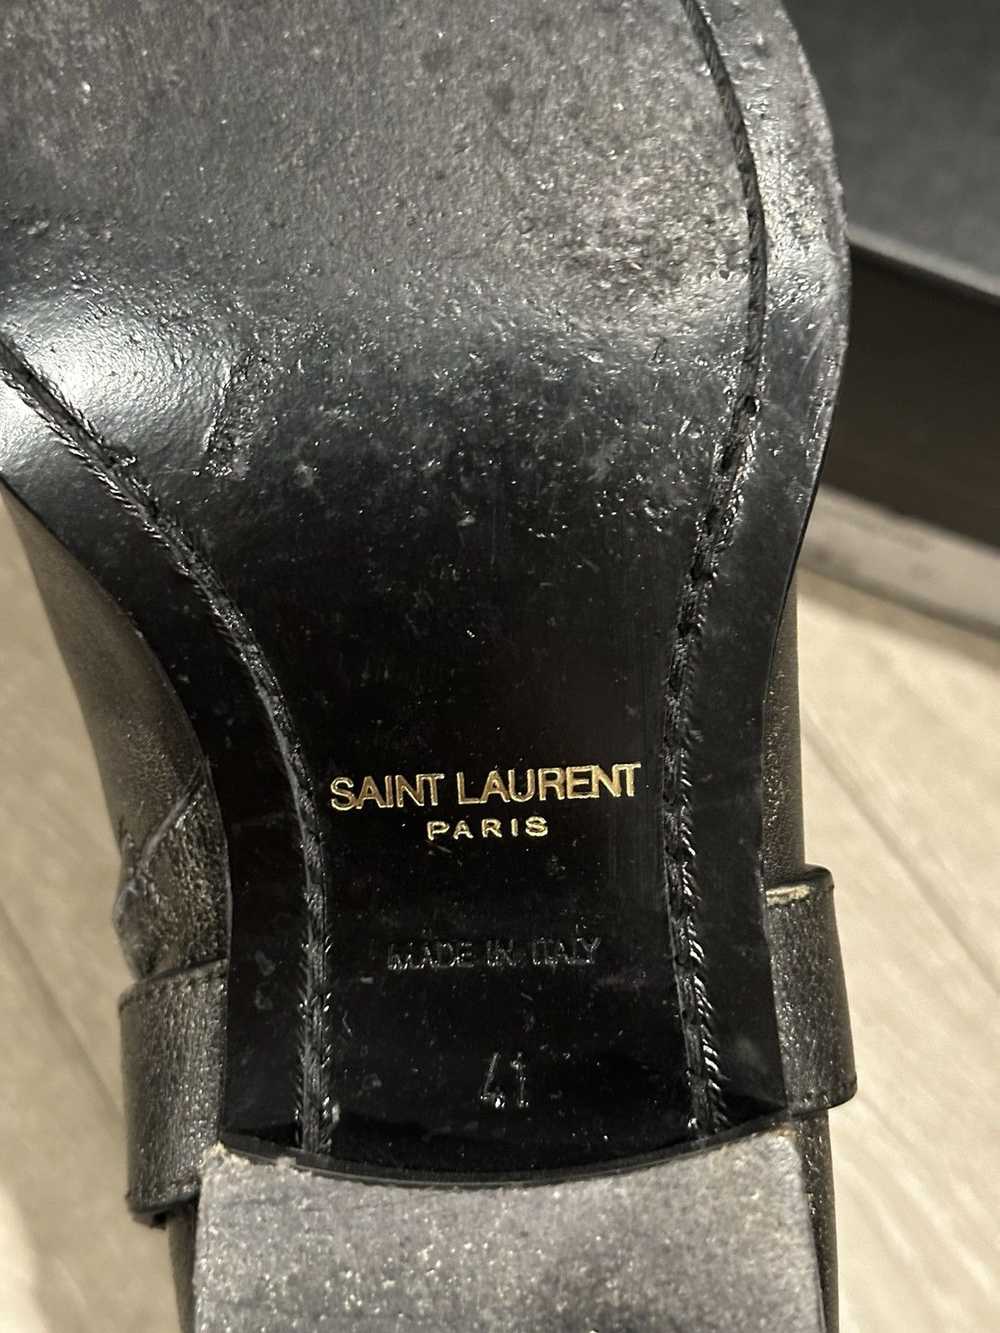 Saint Laurent Paris Stone Washed Charcoal Grey Le… - image 7